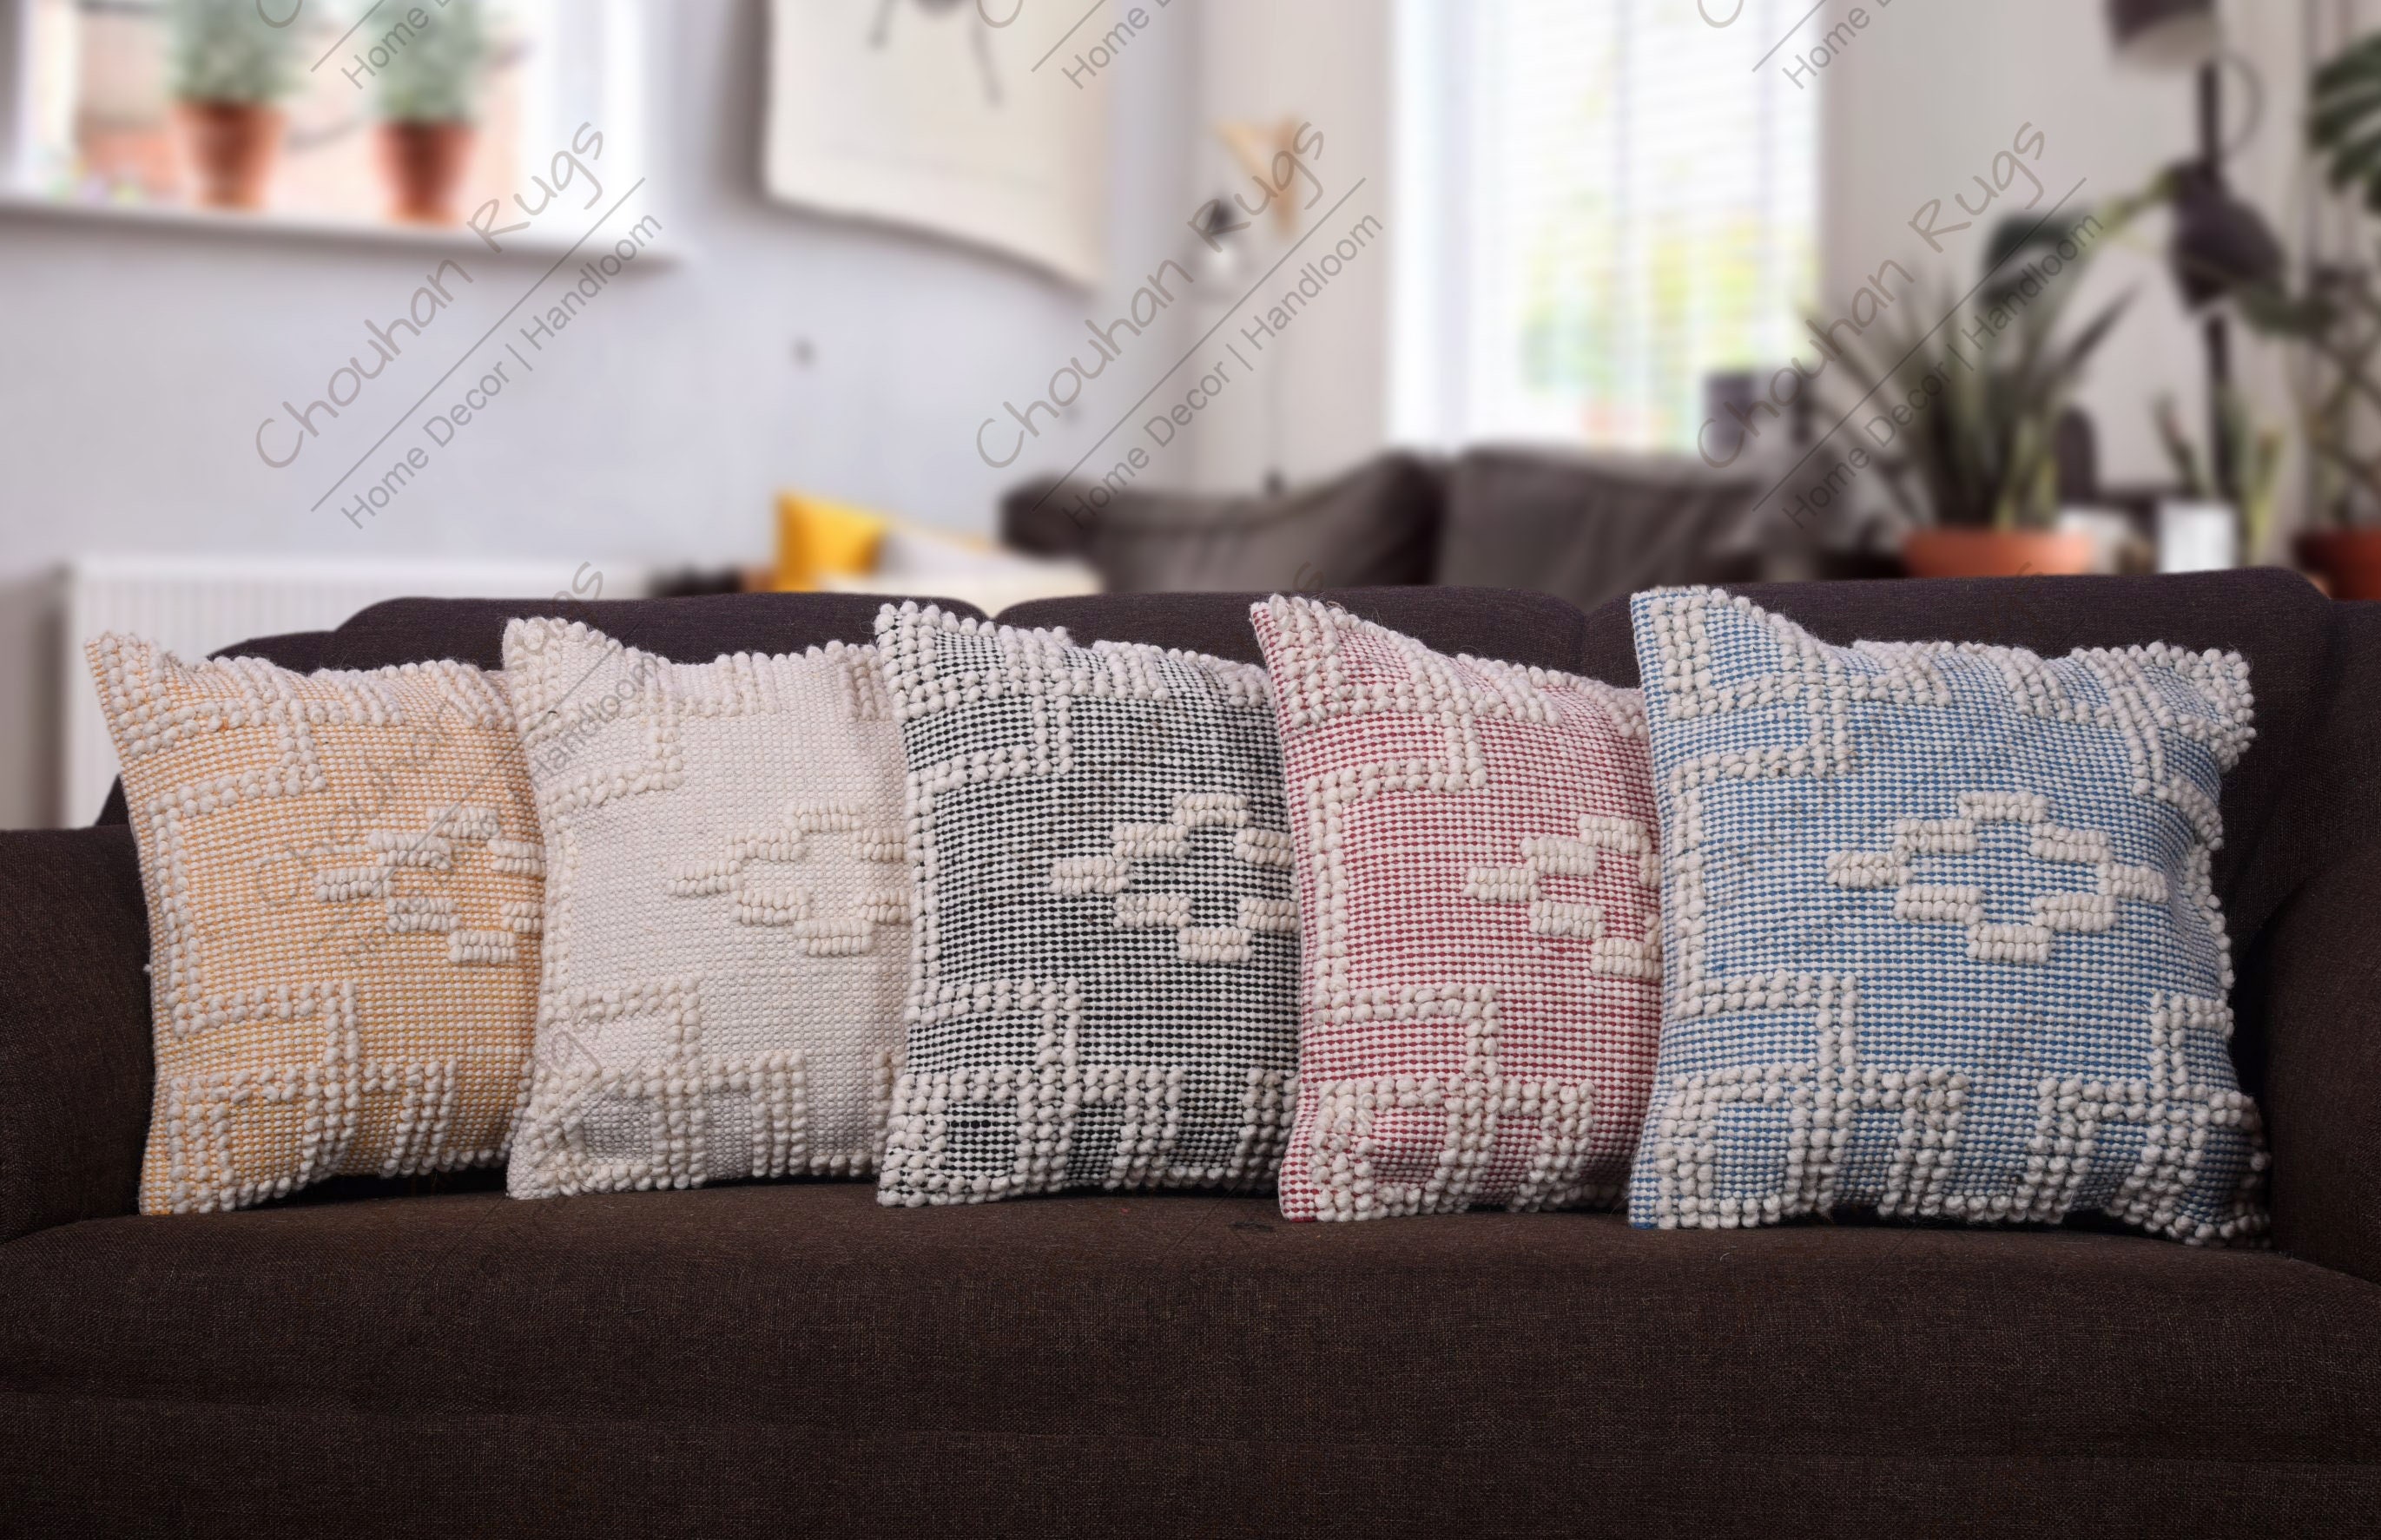 Handmade Wool Shag Pillow, 18x18